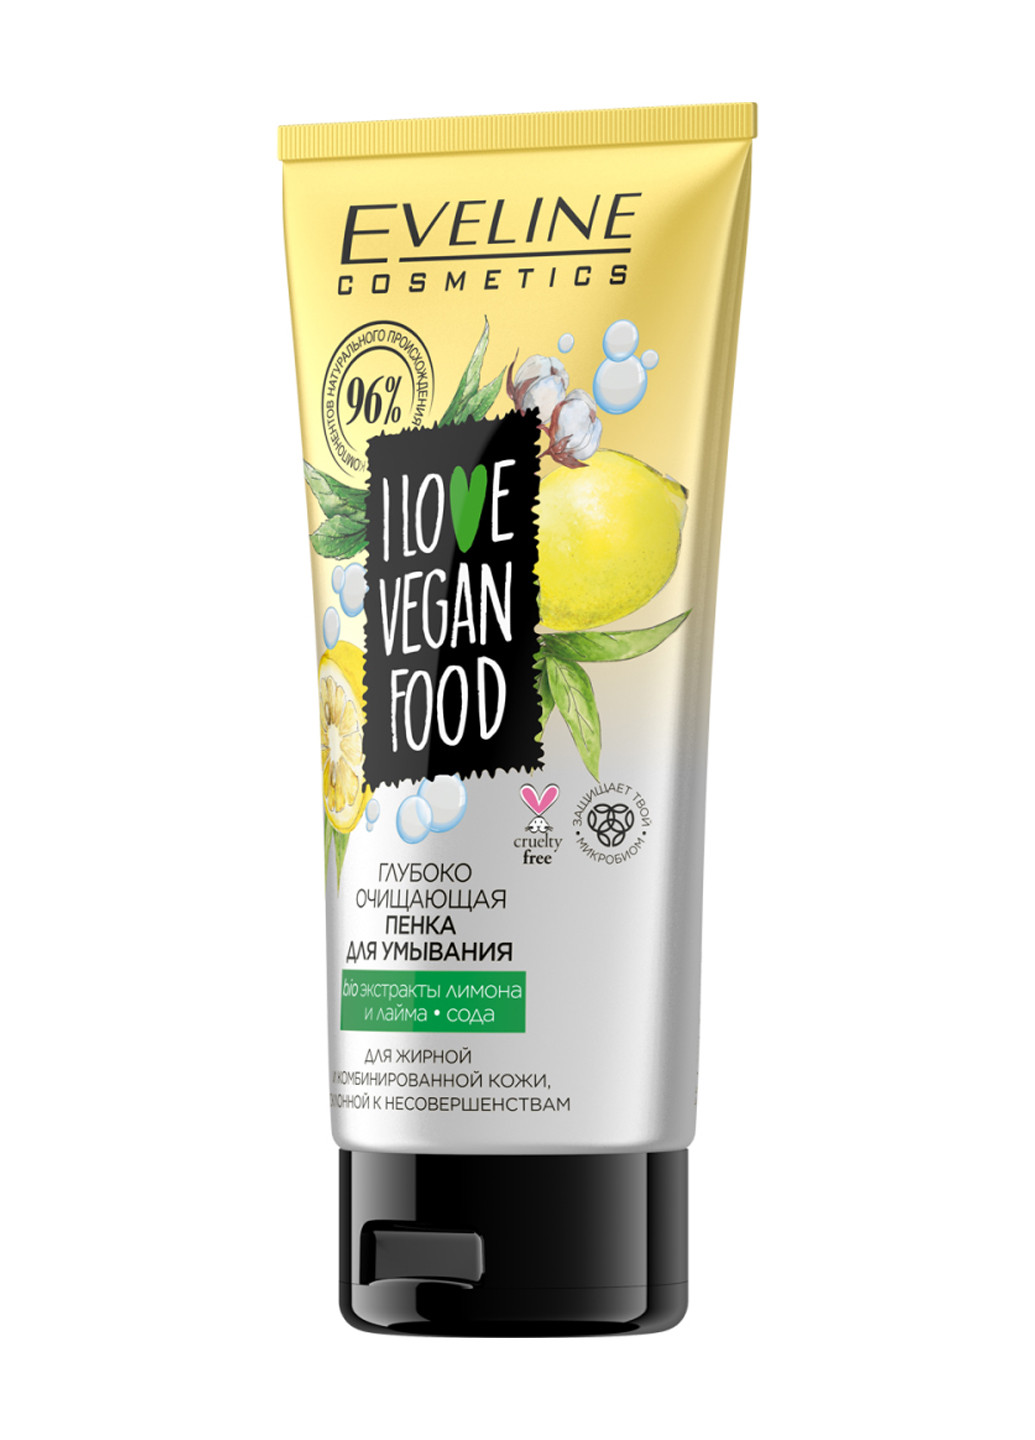 Глубоко-Очищающая пенка для умывания eveline love vegan food (150 мл) Eveline Cosmetics 5903416009276 (256012161)